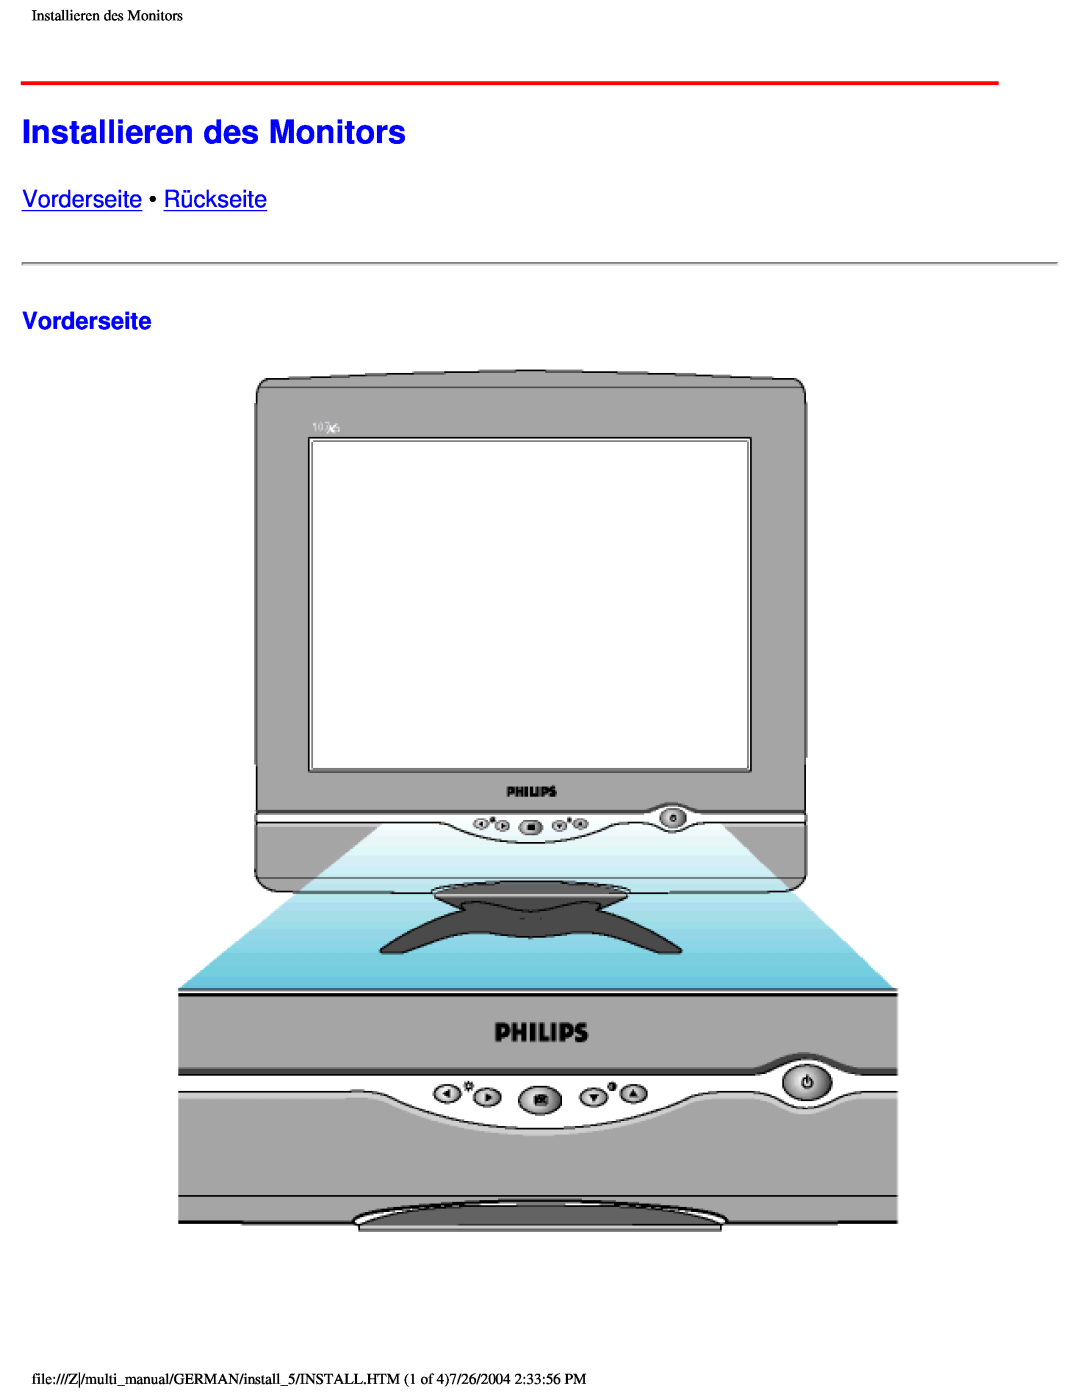 Philips 107X2 user manual Installieren des Monitors, Vorderseite Rückseite 